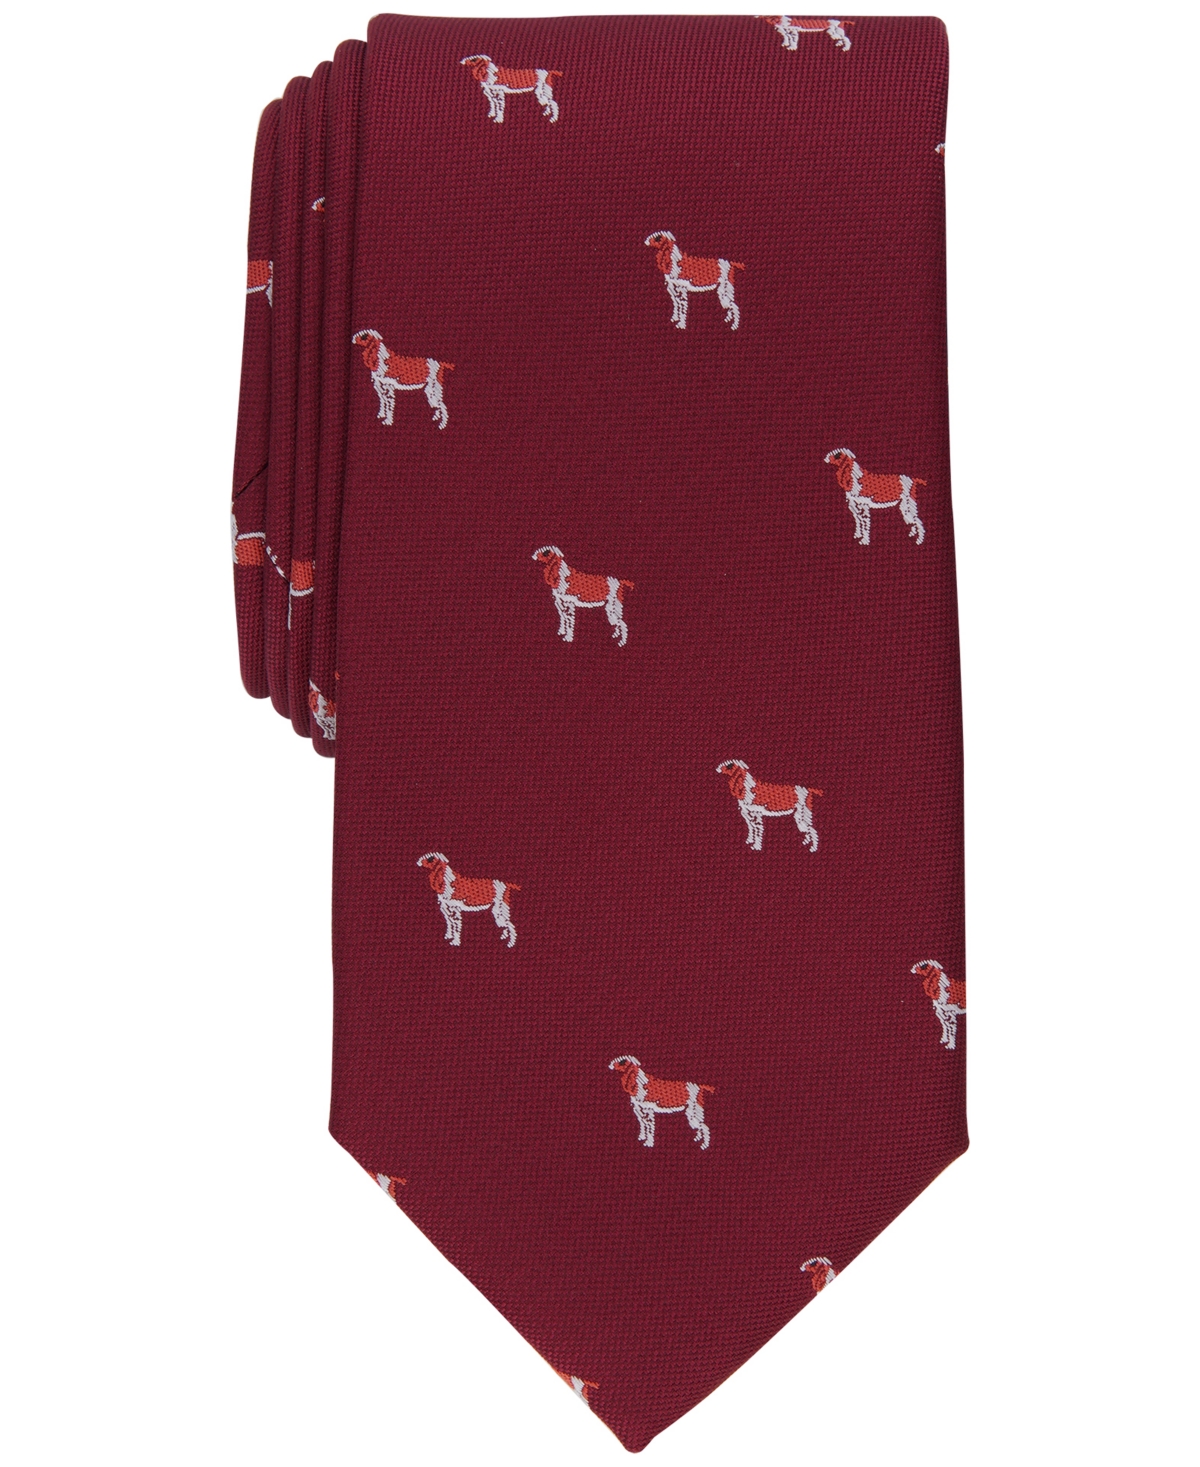 Men's Terrier Tie, Created for Macy's - Burgundy